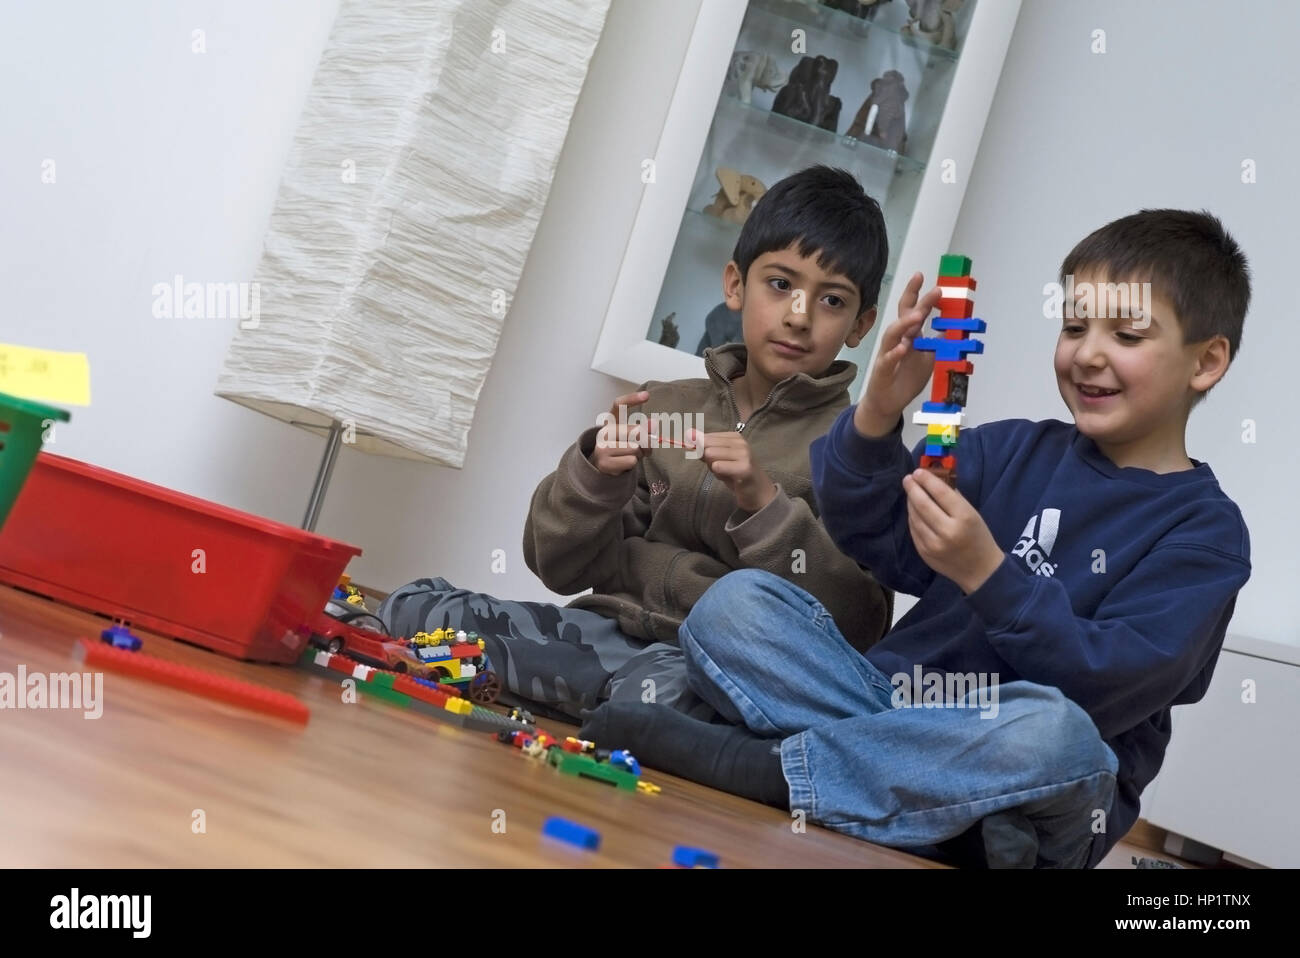 Model release , Zwei Buben, 8 Jahre, sitzen am Fussboden und spielen miteinander - two boys playing together Stock Photo